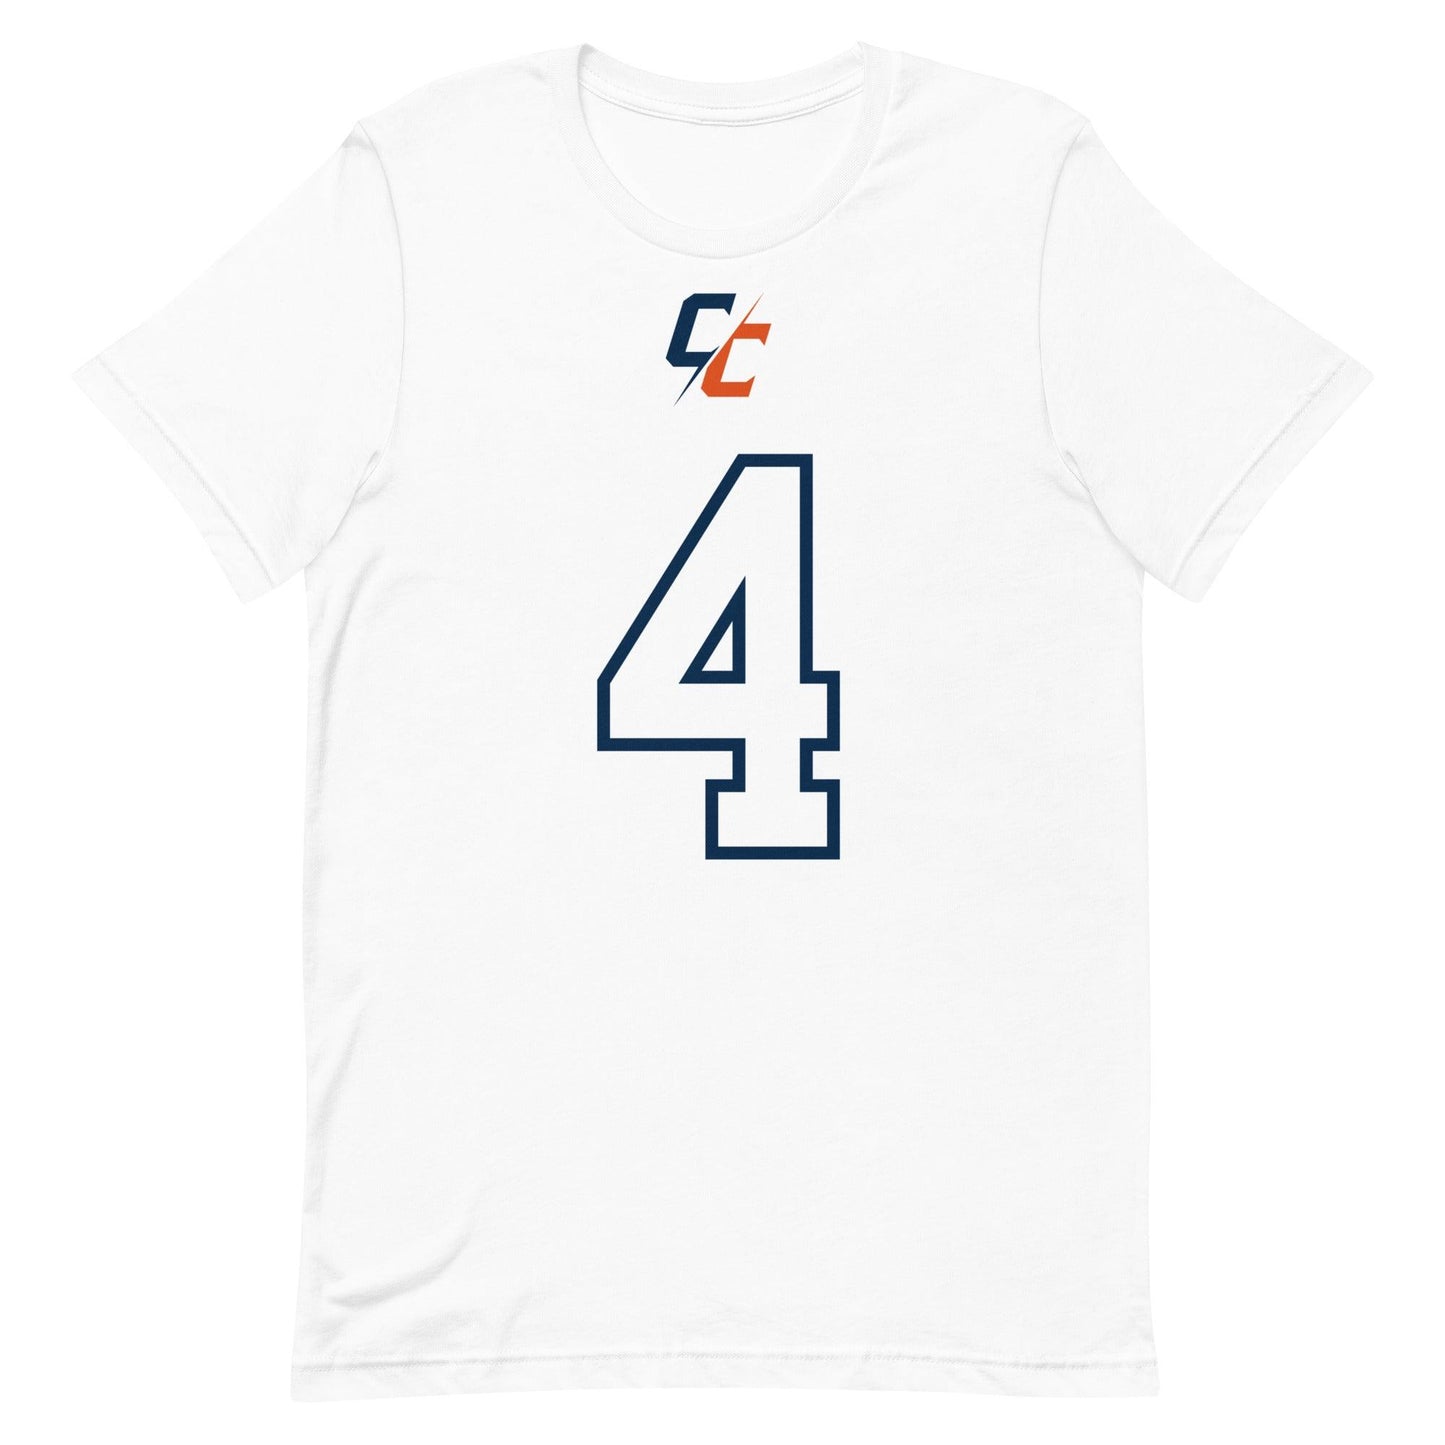 Clifford Chattman "Jersey" t-shirt - Fan Arch